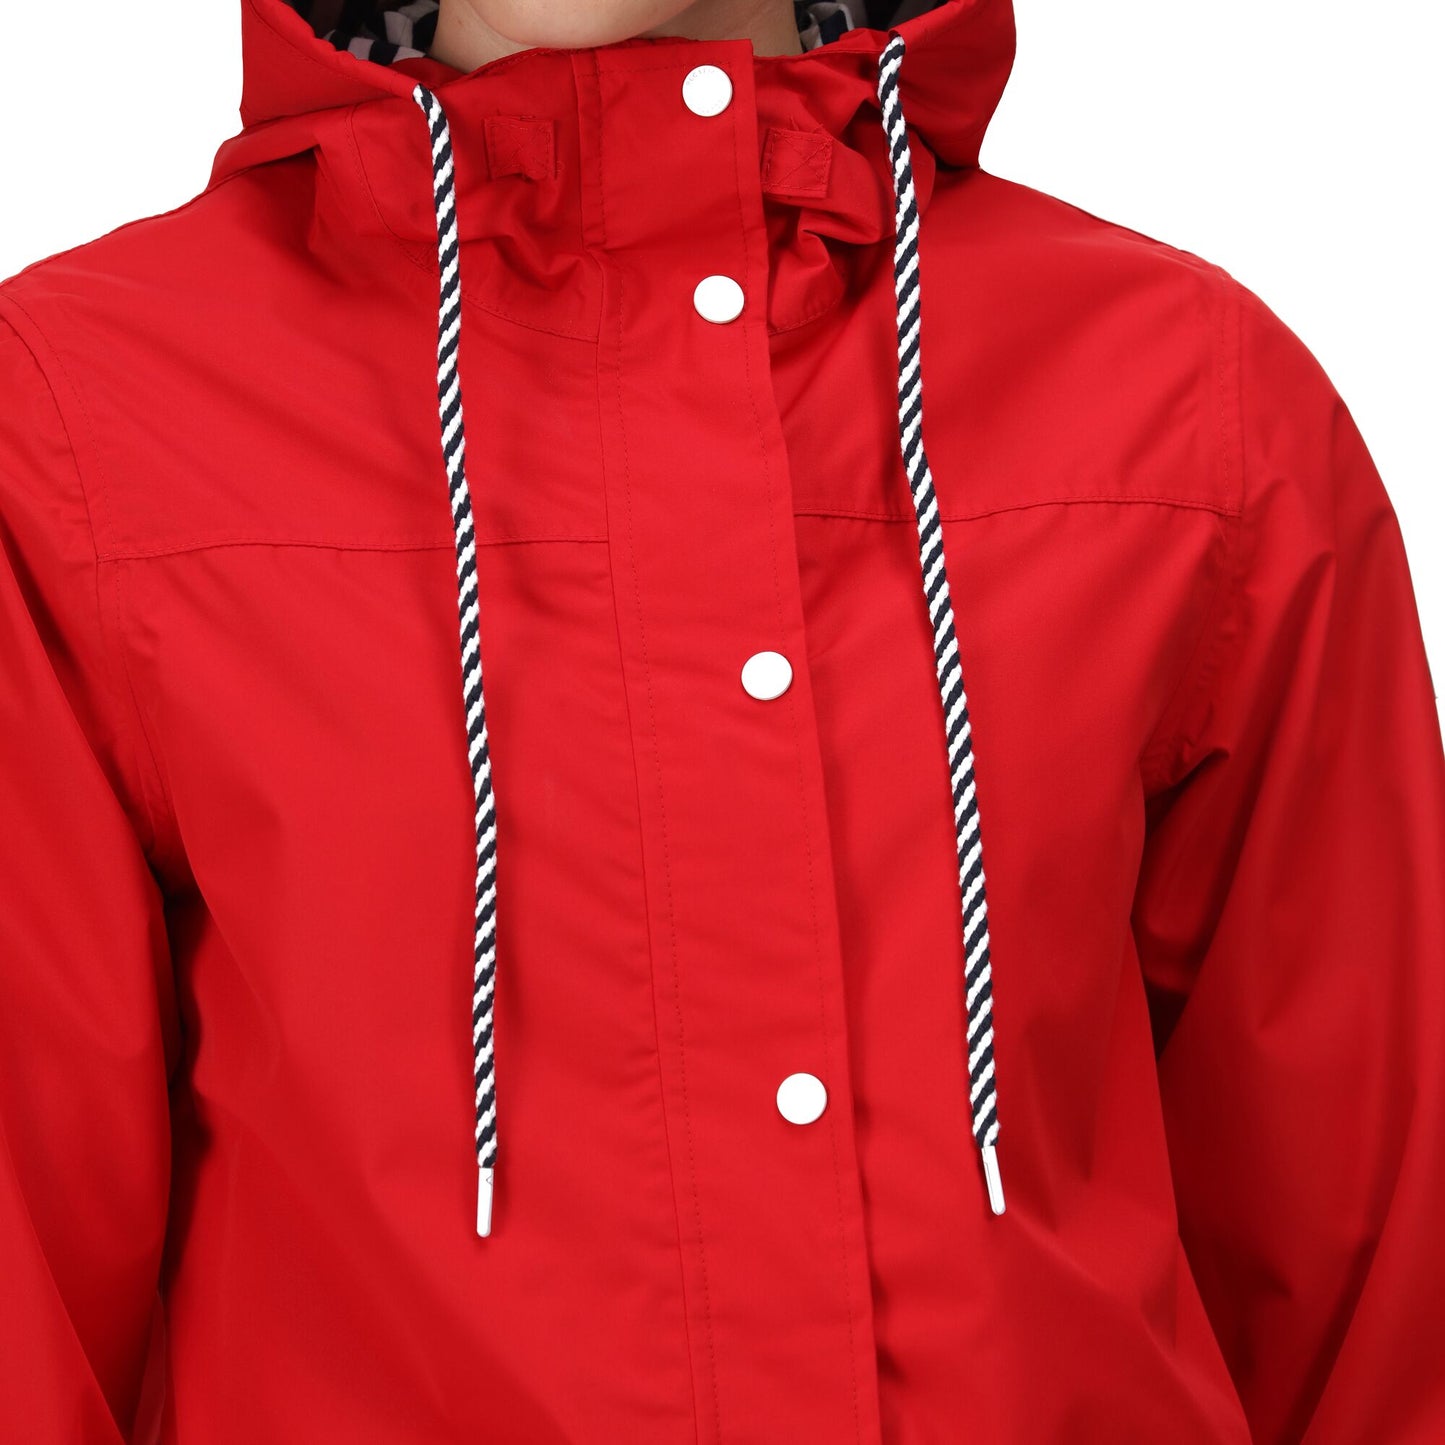 Women's Regatta Bayarma Lightweight Waterproof Jacket - True Red